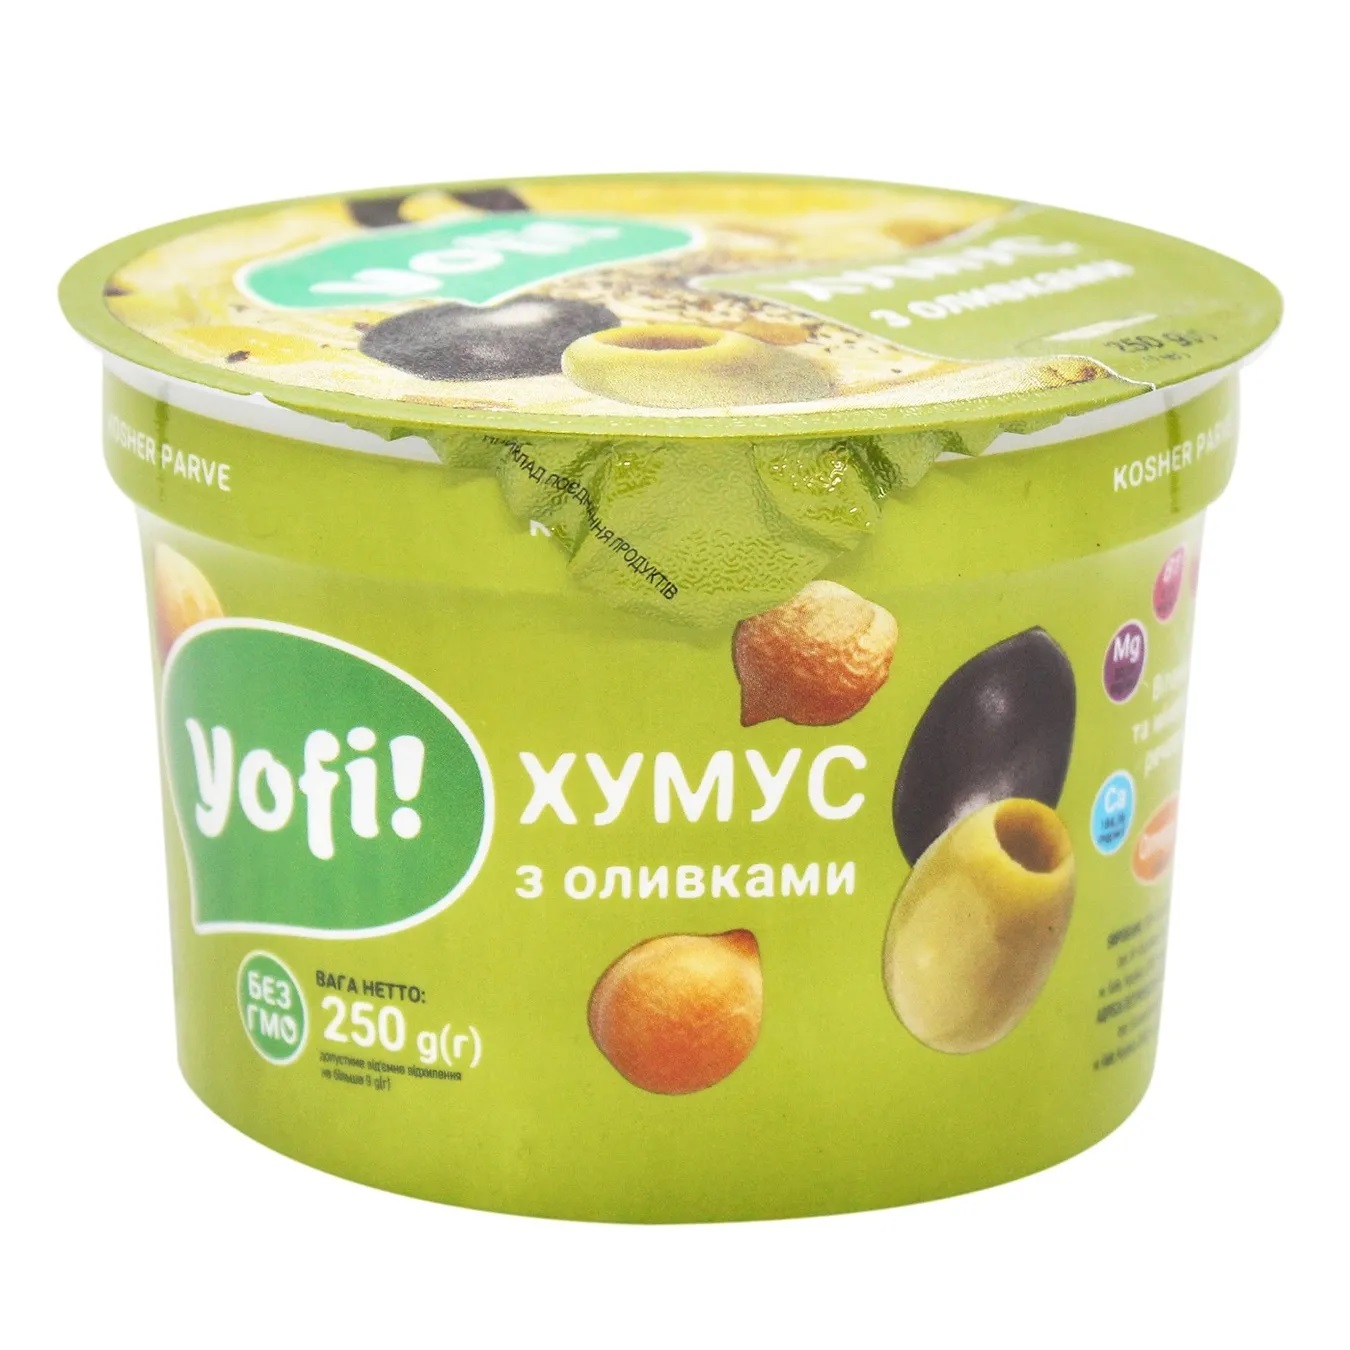 Хумус Yofi! с оливками 250г